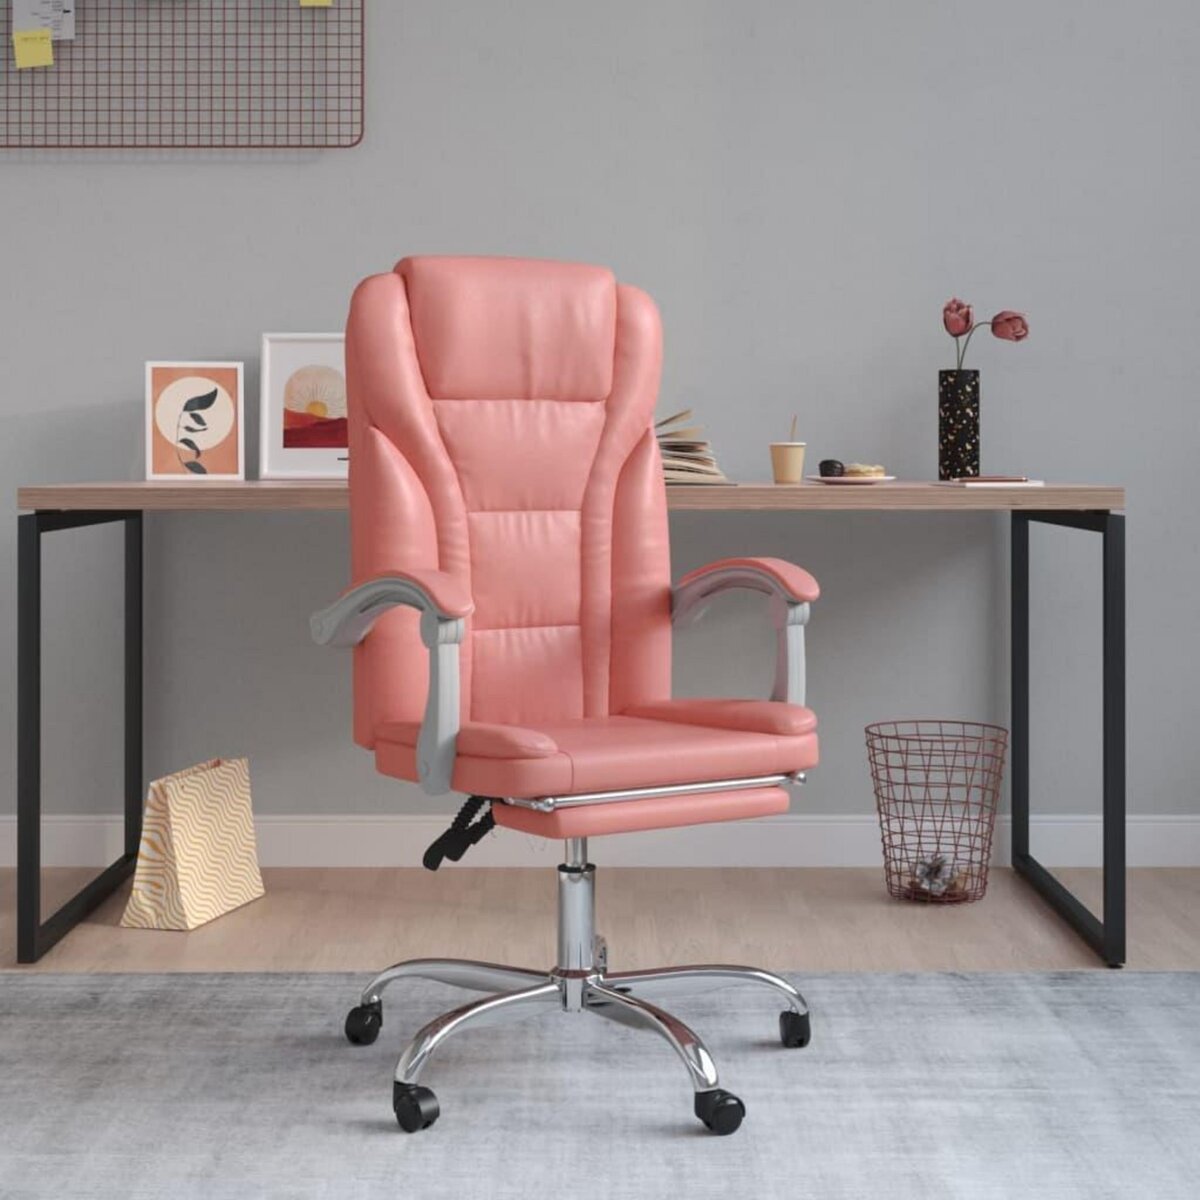 Un fauteuil de bureau combinant design, confort et robustesse